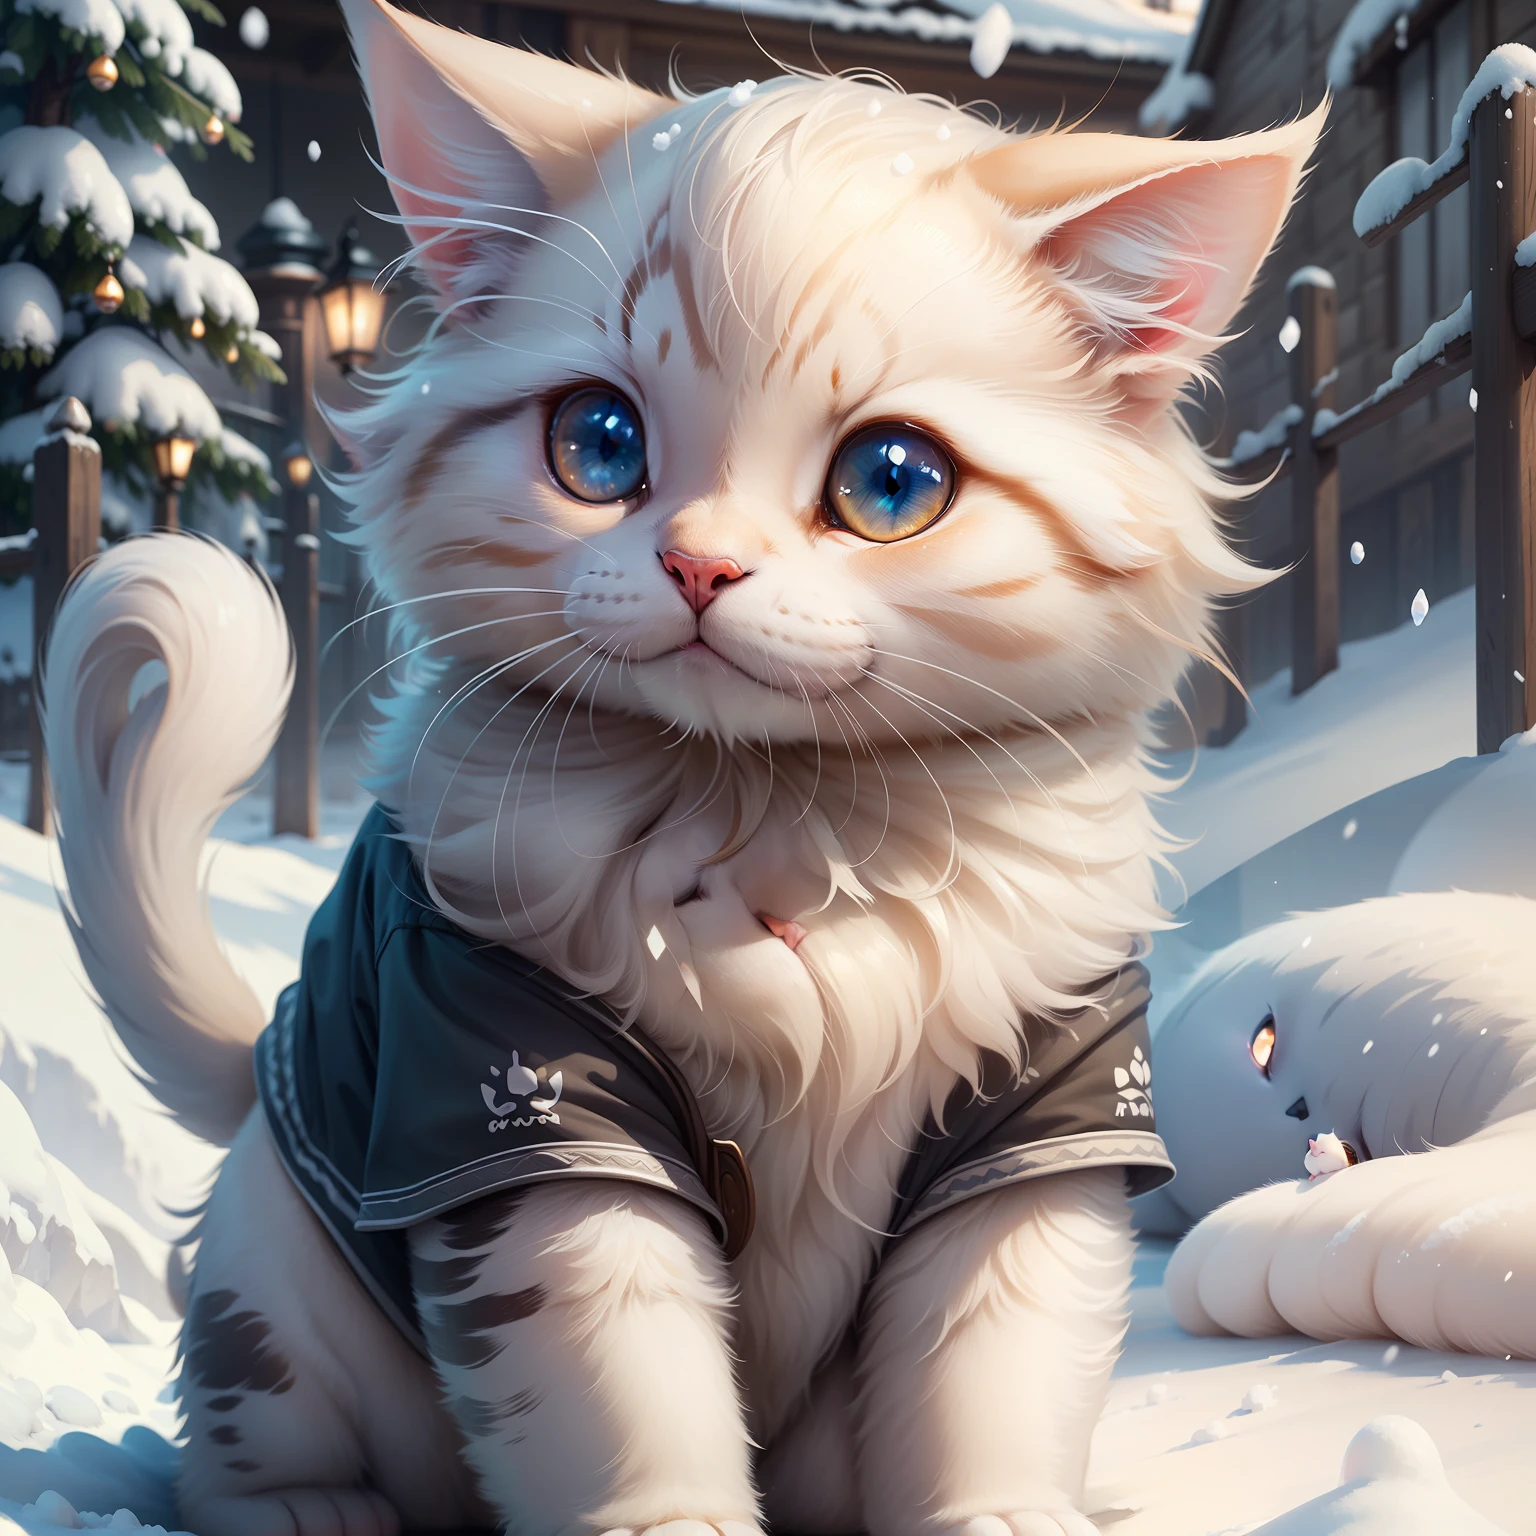 걸작,최고의 품질,매우 상세한,매우 상세한 CG Unity 8k 벽지,귀여운 고양이,하얀색,강아지,눈